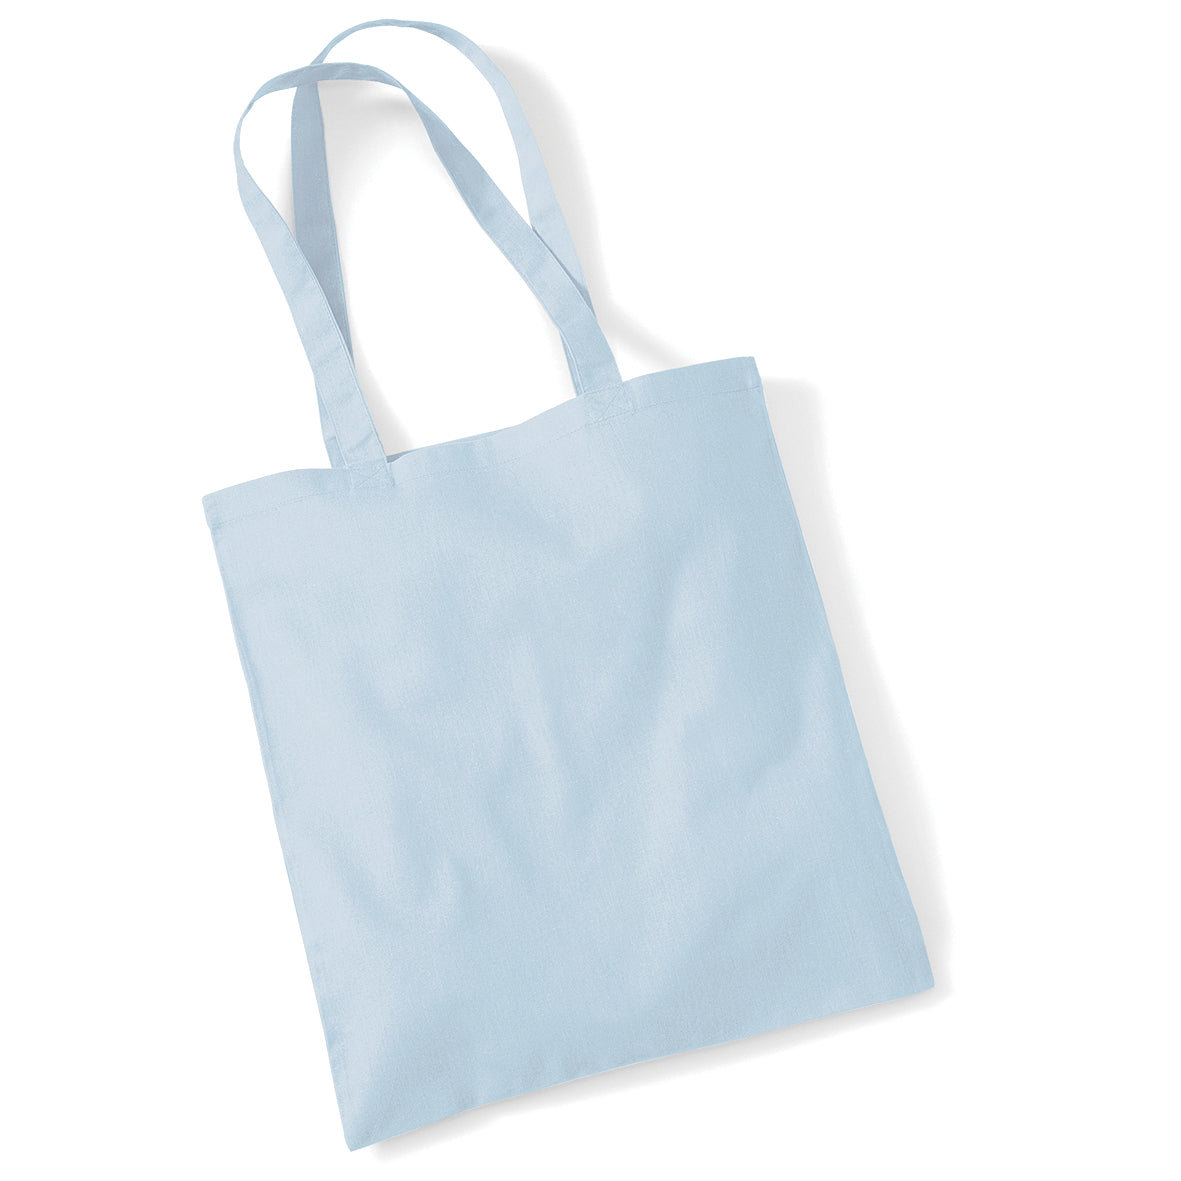 Bag for life - long handles